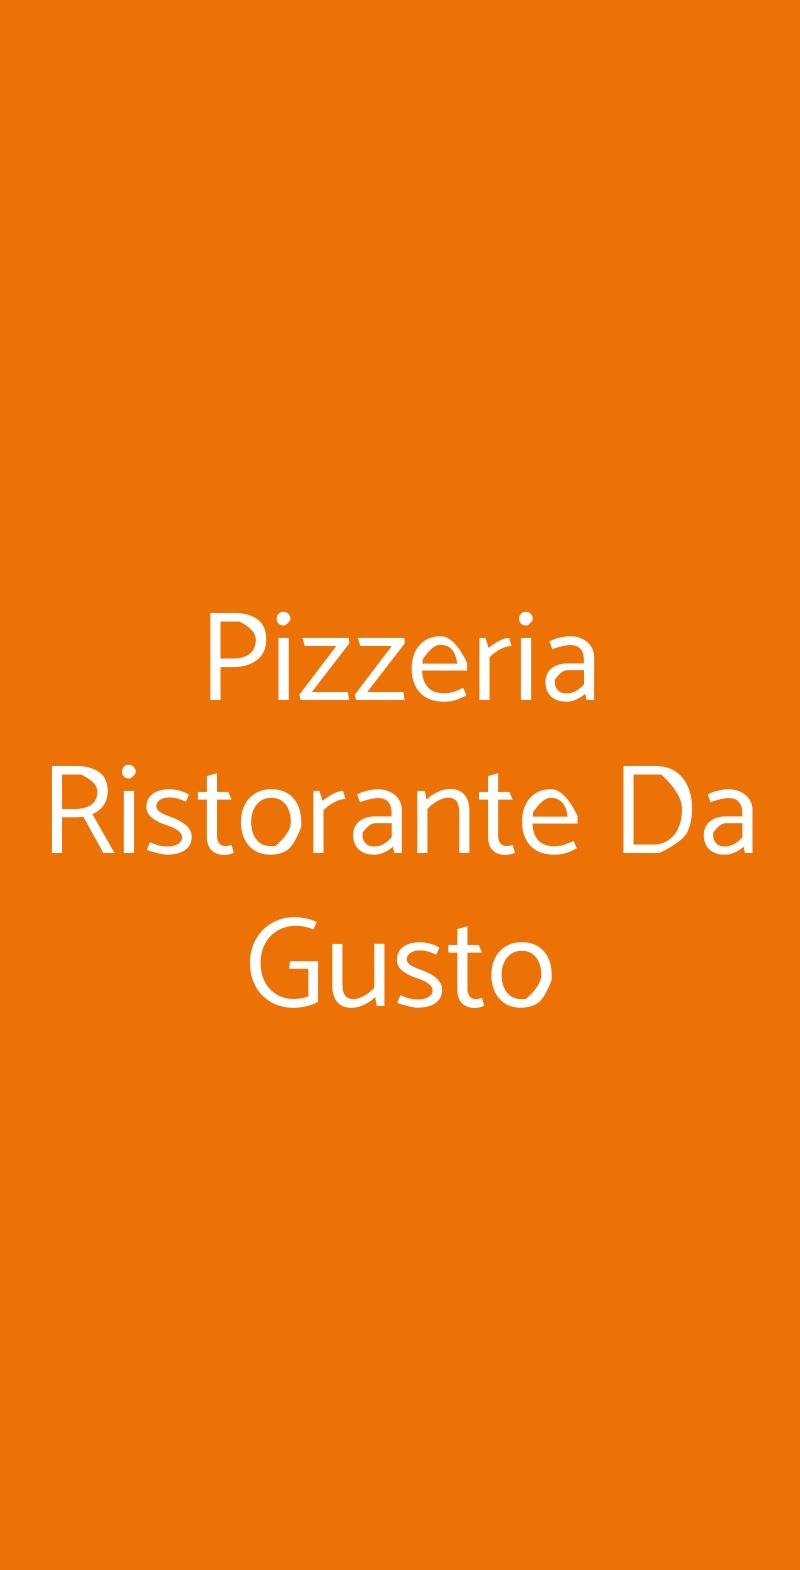 Pizzeria Ristorante Da Gusto Forli menù 1 pagina